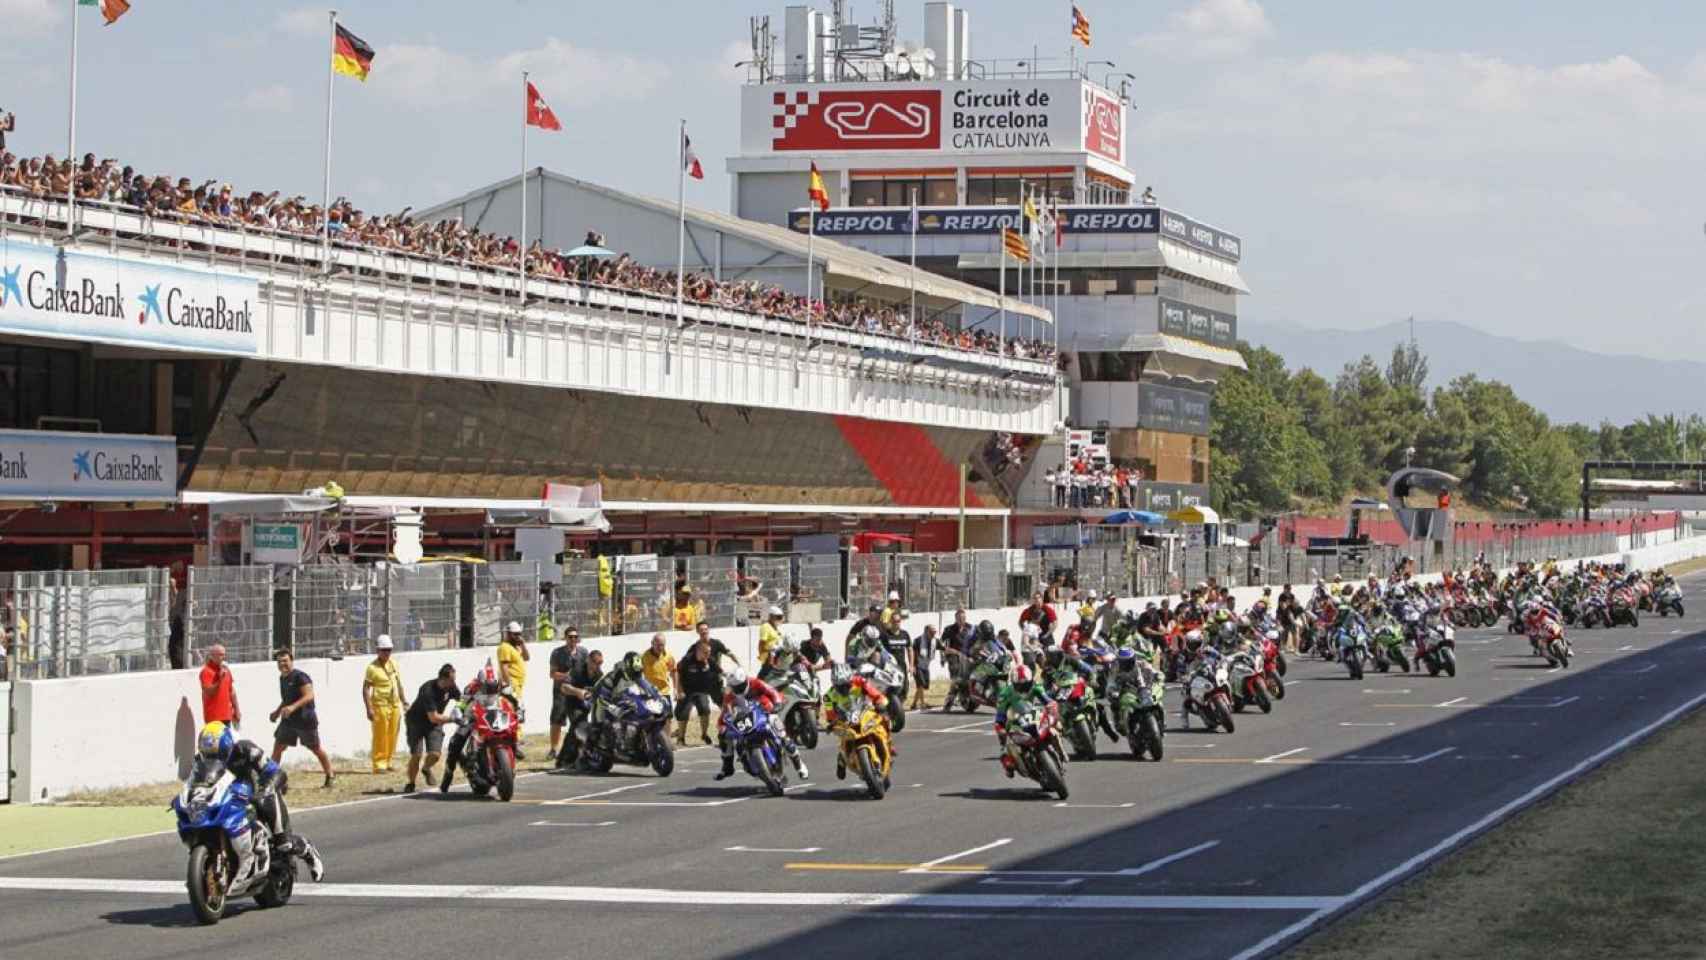 Imagen de la salida de las 24 horas motociclistas en el Circuit de Barcelona-Catalunya. Un clásico / CdeC